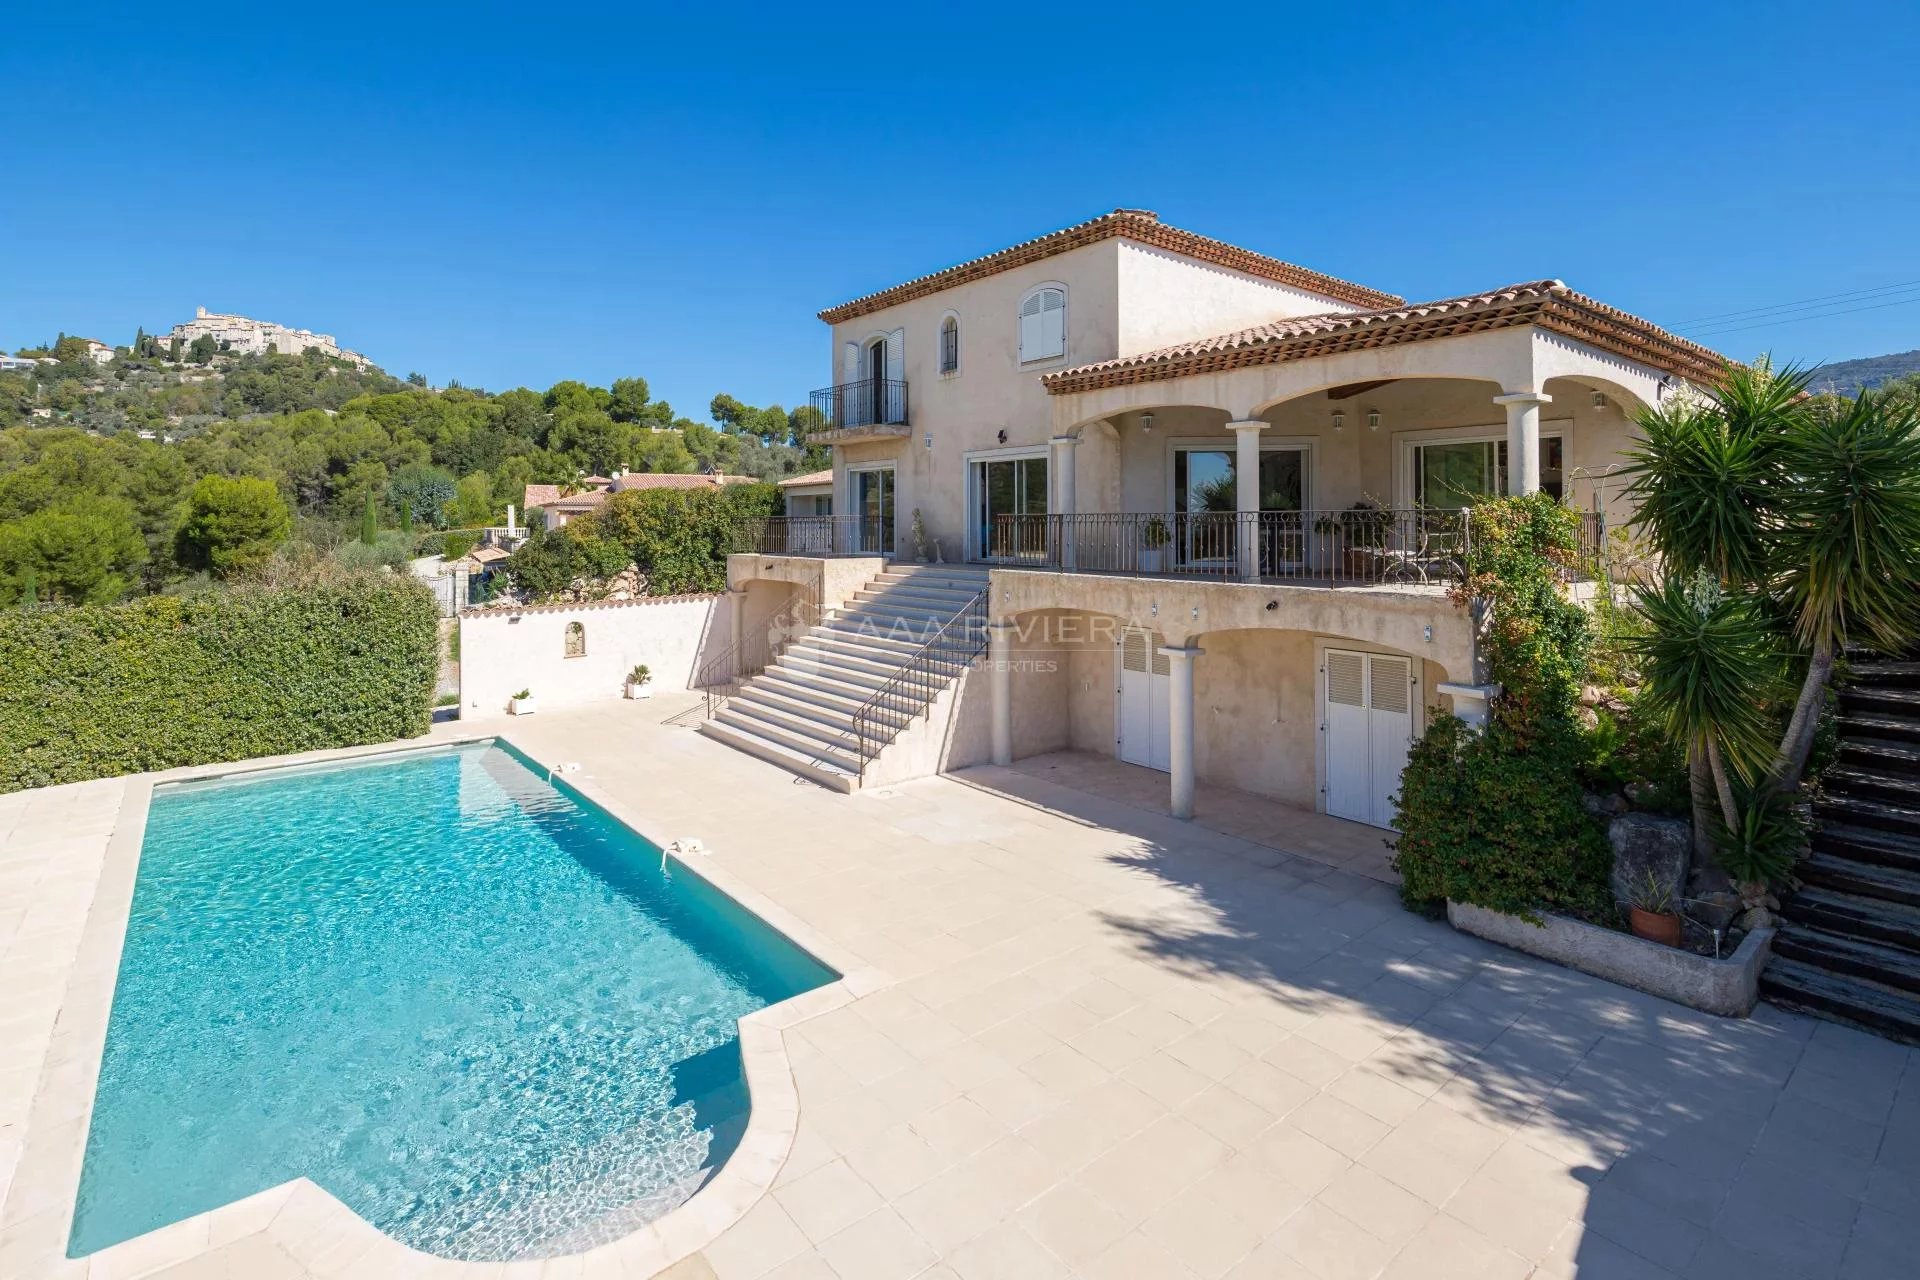 CARROS - Nyere villa med 6 soverom, svømmebasseng og panorama utsikt i Nice bakland